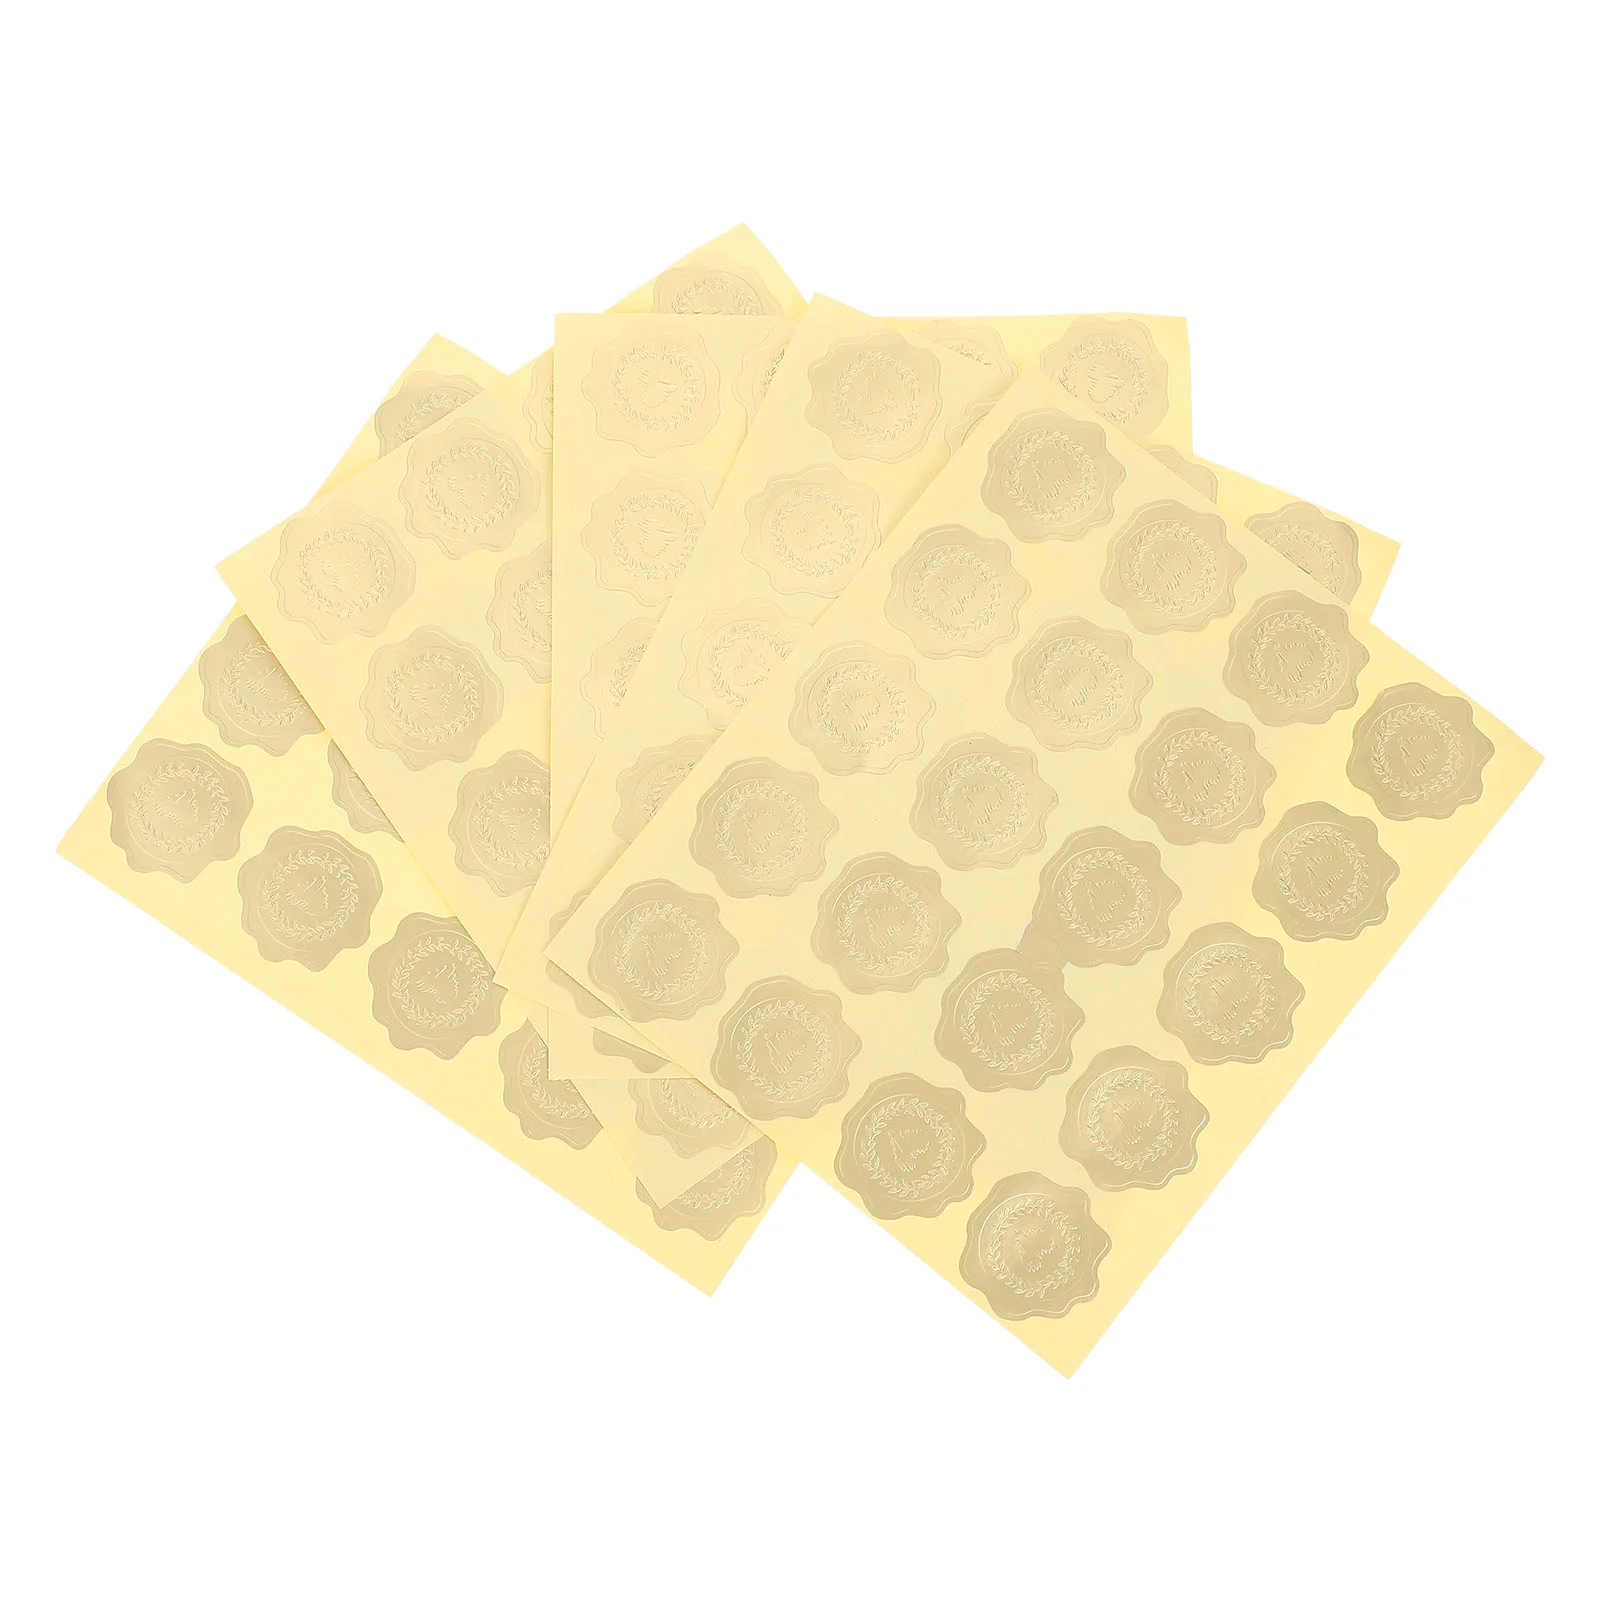 

Стикеры s печать для конверта Свадебные восковые тисненые приглашения золотые стикеры конверты клей вечерние герметичные этикетки самоэтикетки подарок